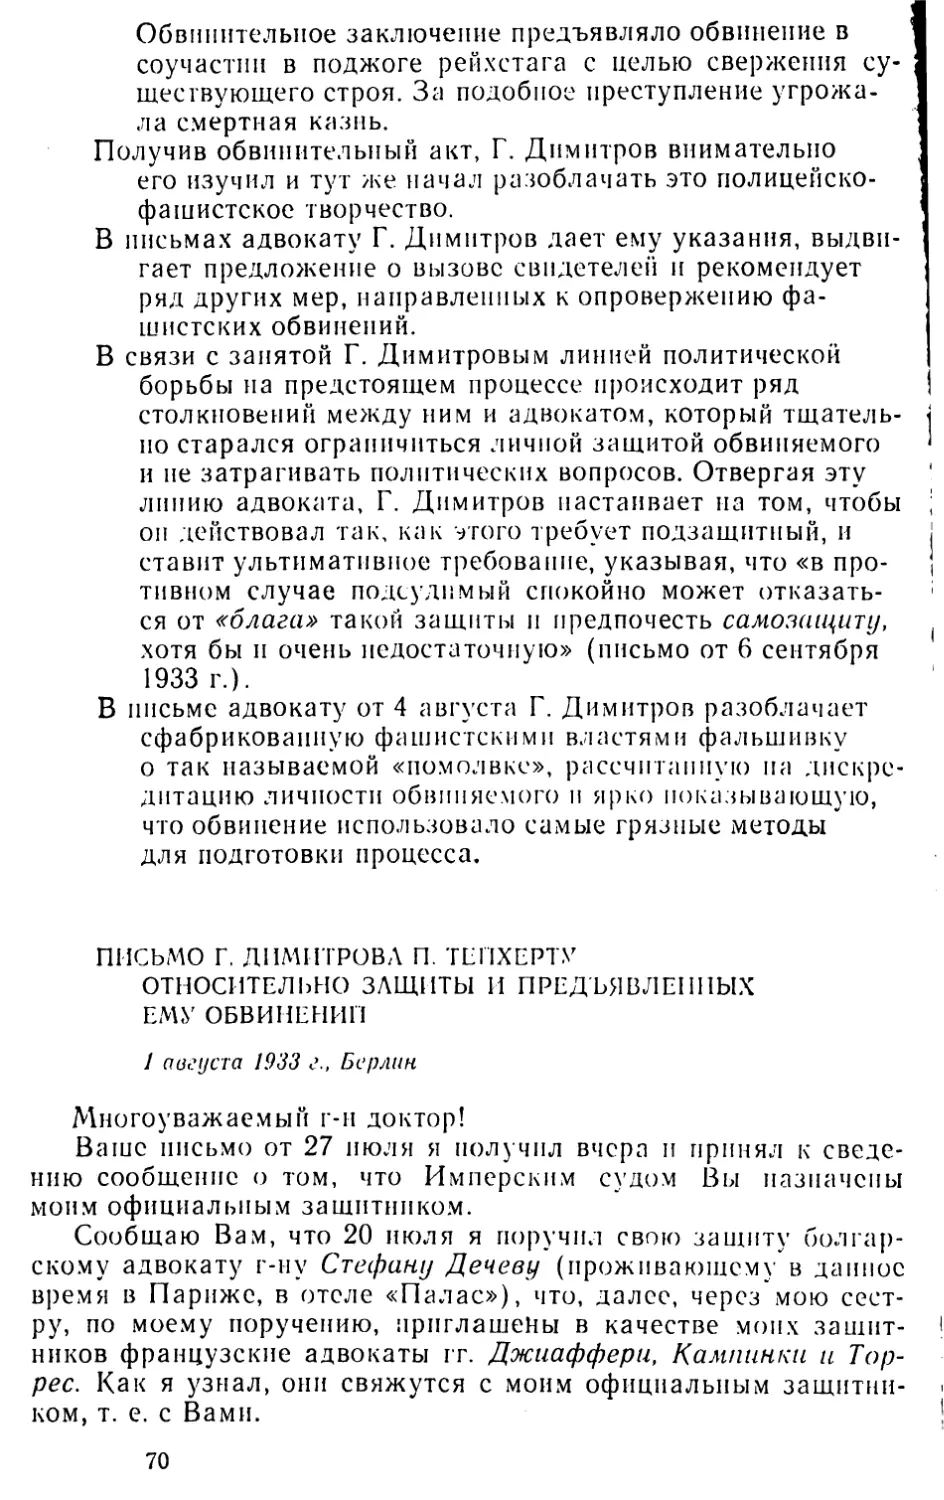 Письмо Г. Димитрова П. Тейхерту относительно защиты и предъявленных ему обвинений. 1 августа 1933 г